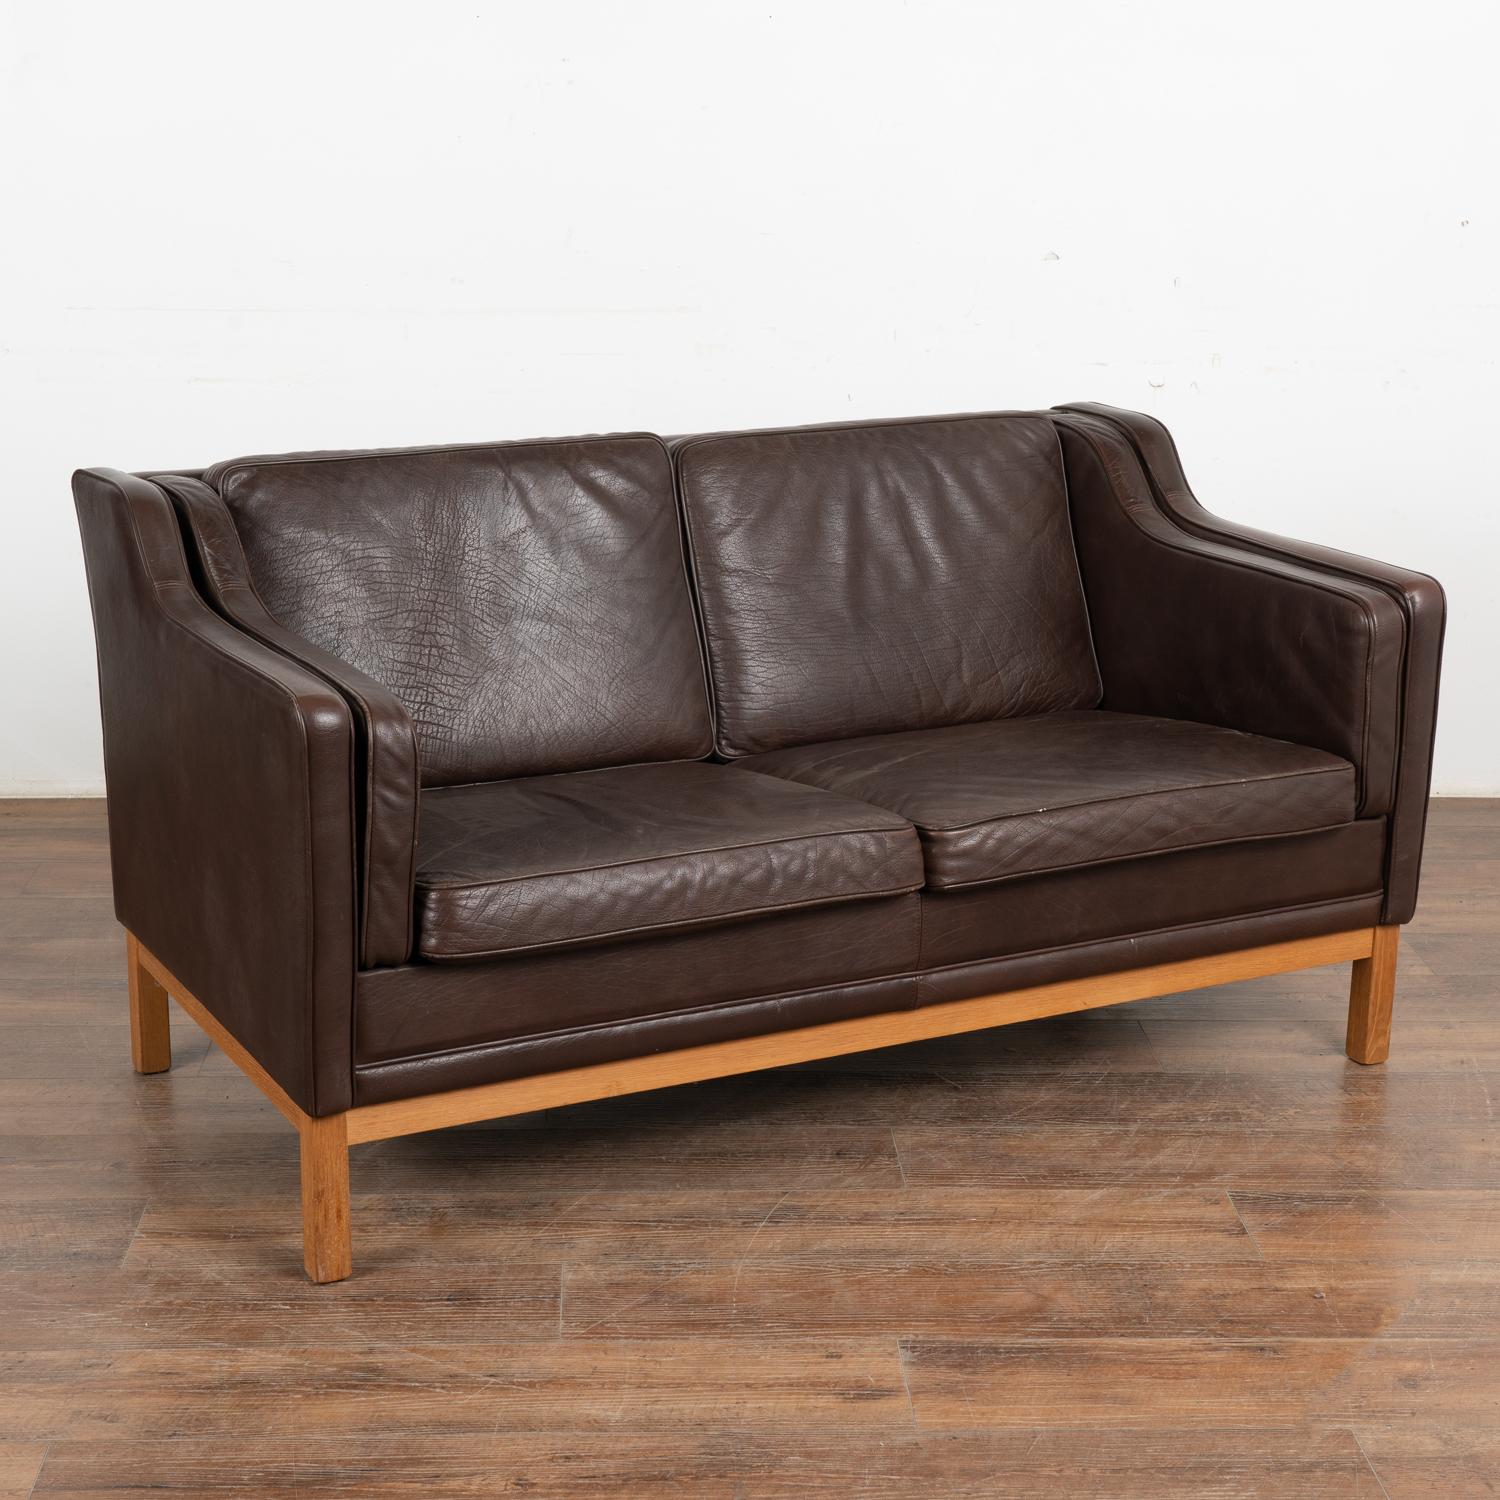 Modernes Vintage-Sofa mit zwei Sitzen aus braunem Leder aus der Mitte des Jahrhunderts aus Dänemark. Dieses bequeme Sofa verbindet Tradition mit modernen Linien.
Mit dunkelbraunem Leder gepolstert, lose Kissen, Beine aus gebeiztem Buchenholz.